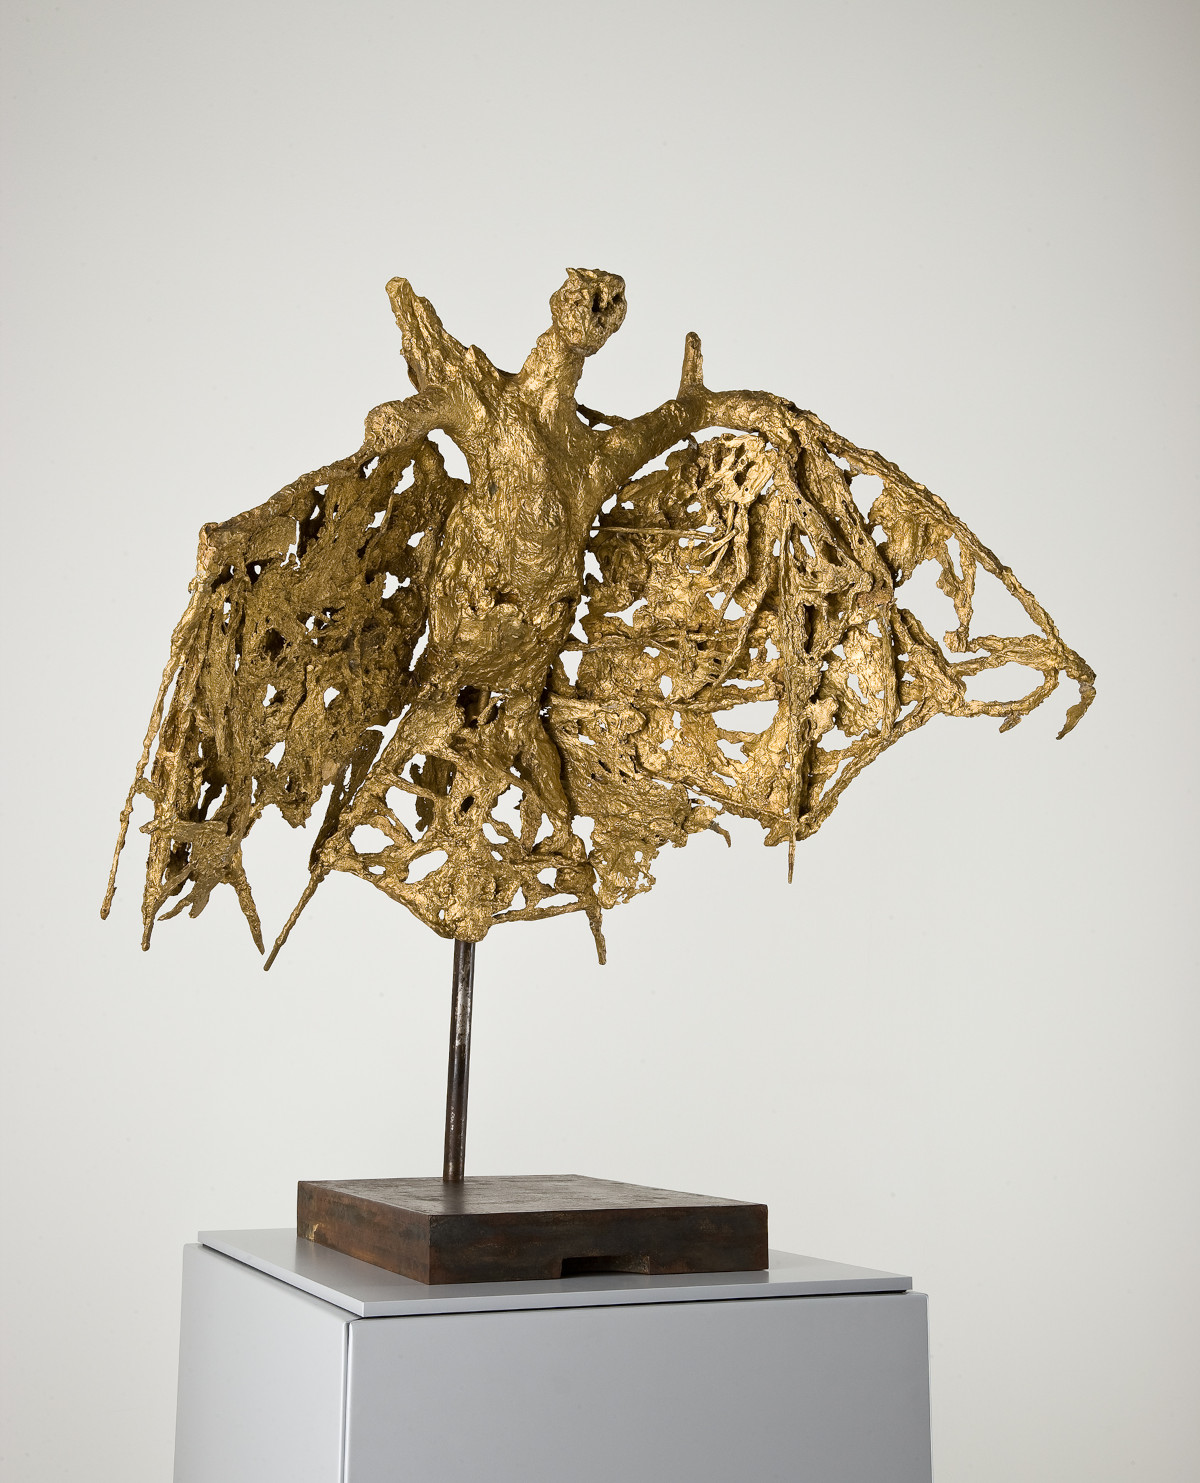 Sculpture de Germaine Richier représentant une chauve-souris stylisée en bronze patiné doré